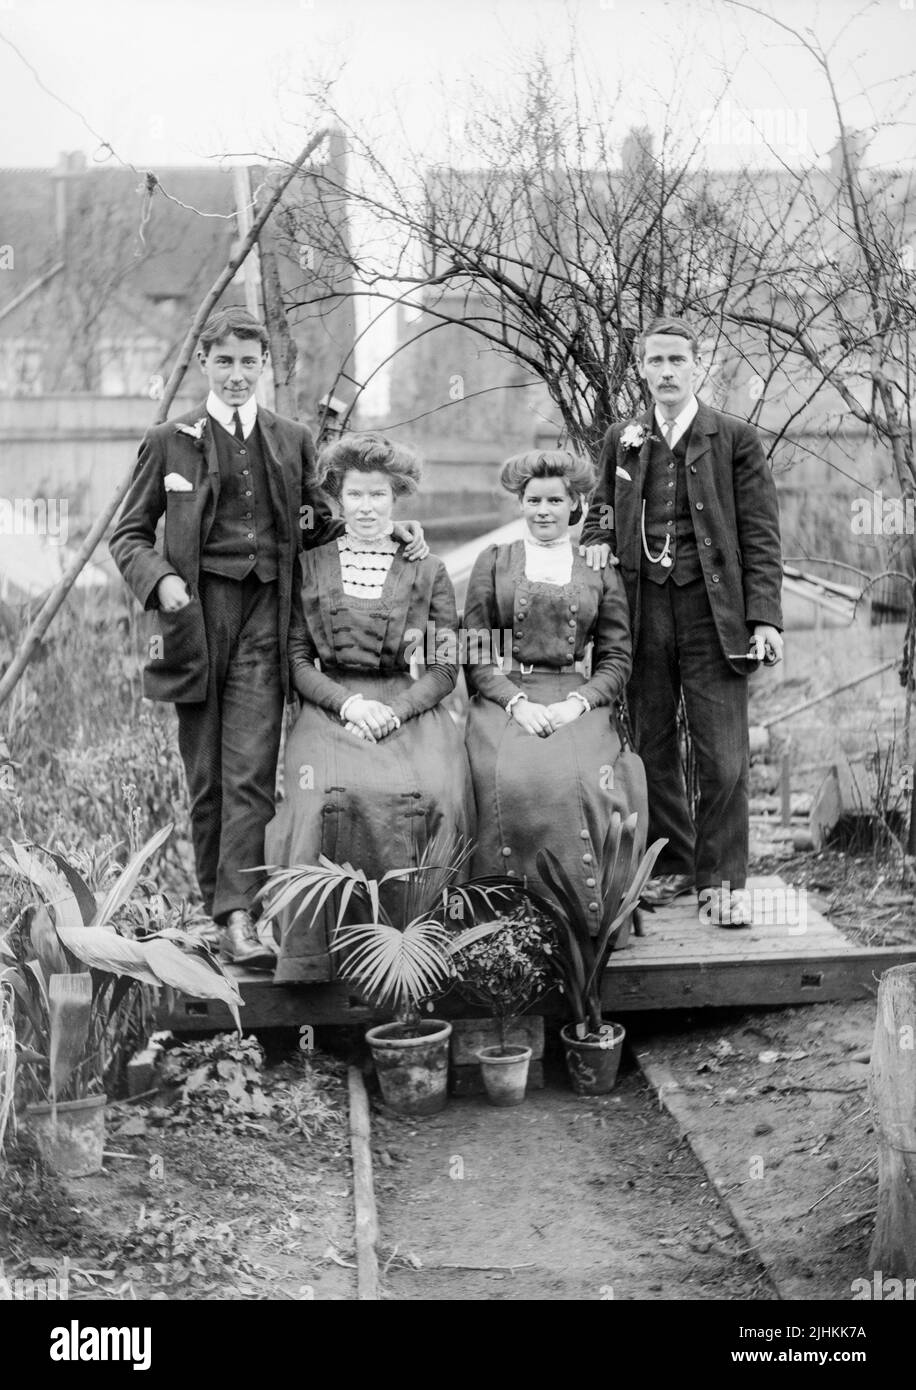 Une photographie noir et blanc édouardienne du début du 20th siècle montrant une famille britannique. Deux hommes et deux femmes. Banque D'Images